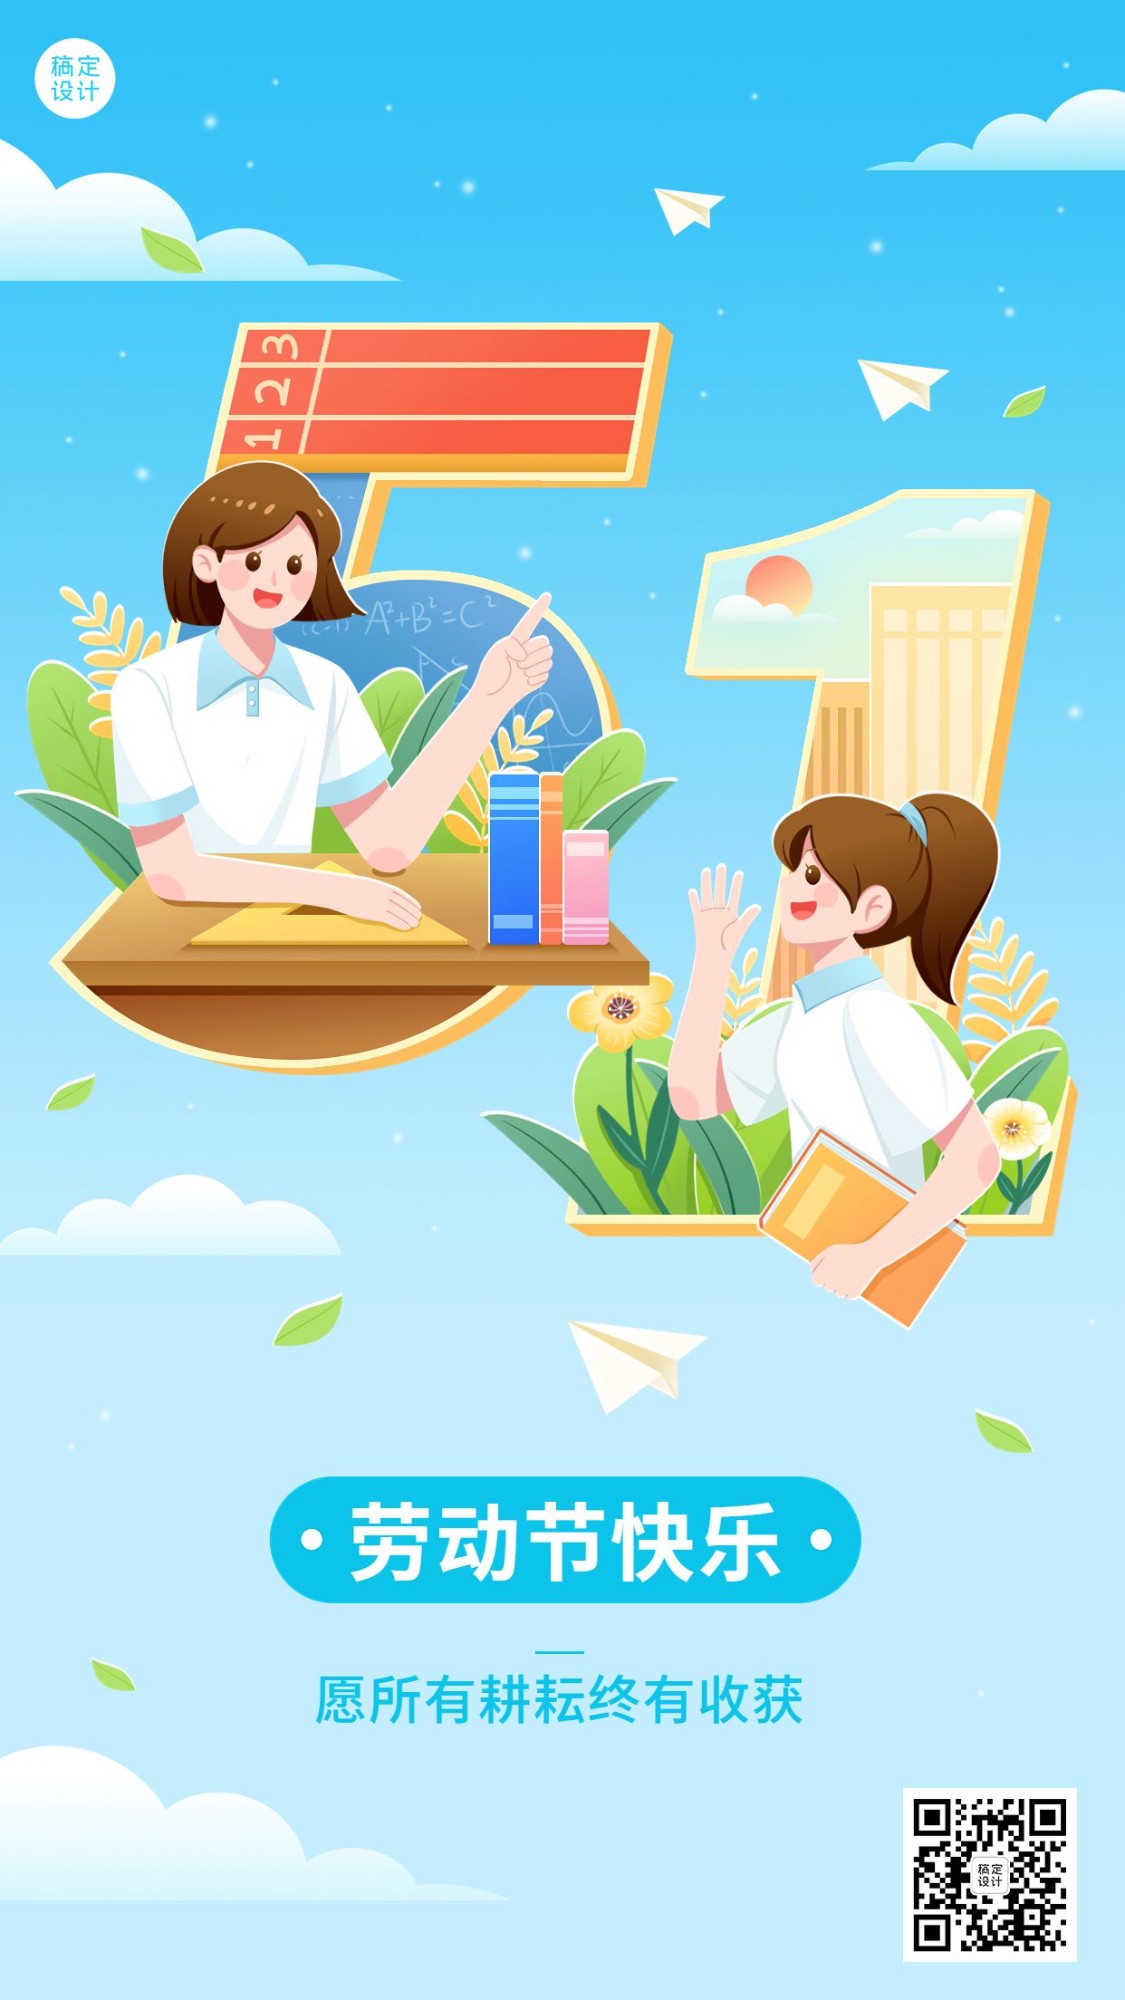 五一劳动节祝福K12行业劳动节祝福插画手机海报